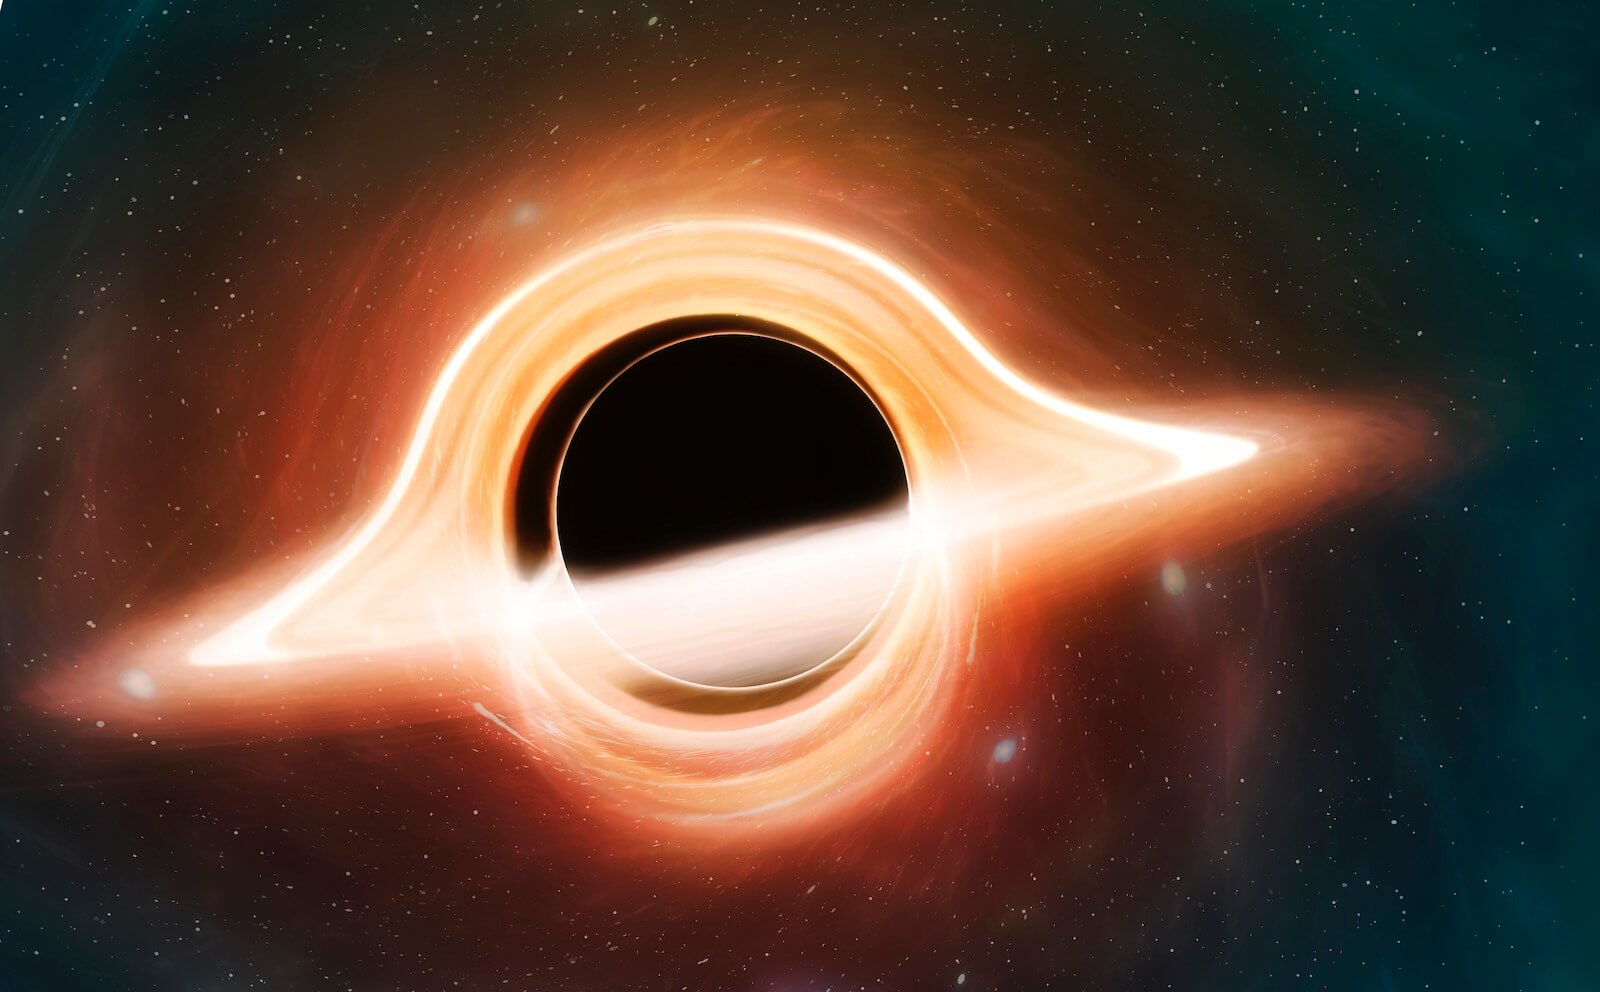 ფიზიკოსებმა შავი ხვრელის შესახებ სრულიად მოულოდნელი აღმოჩენა გააკეთეს — რა უნდა ვიცოდეთ #1tvმეცნიერება